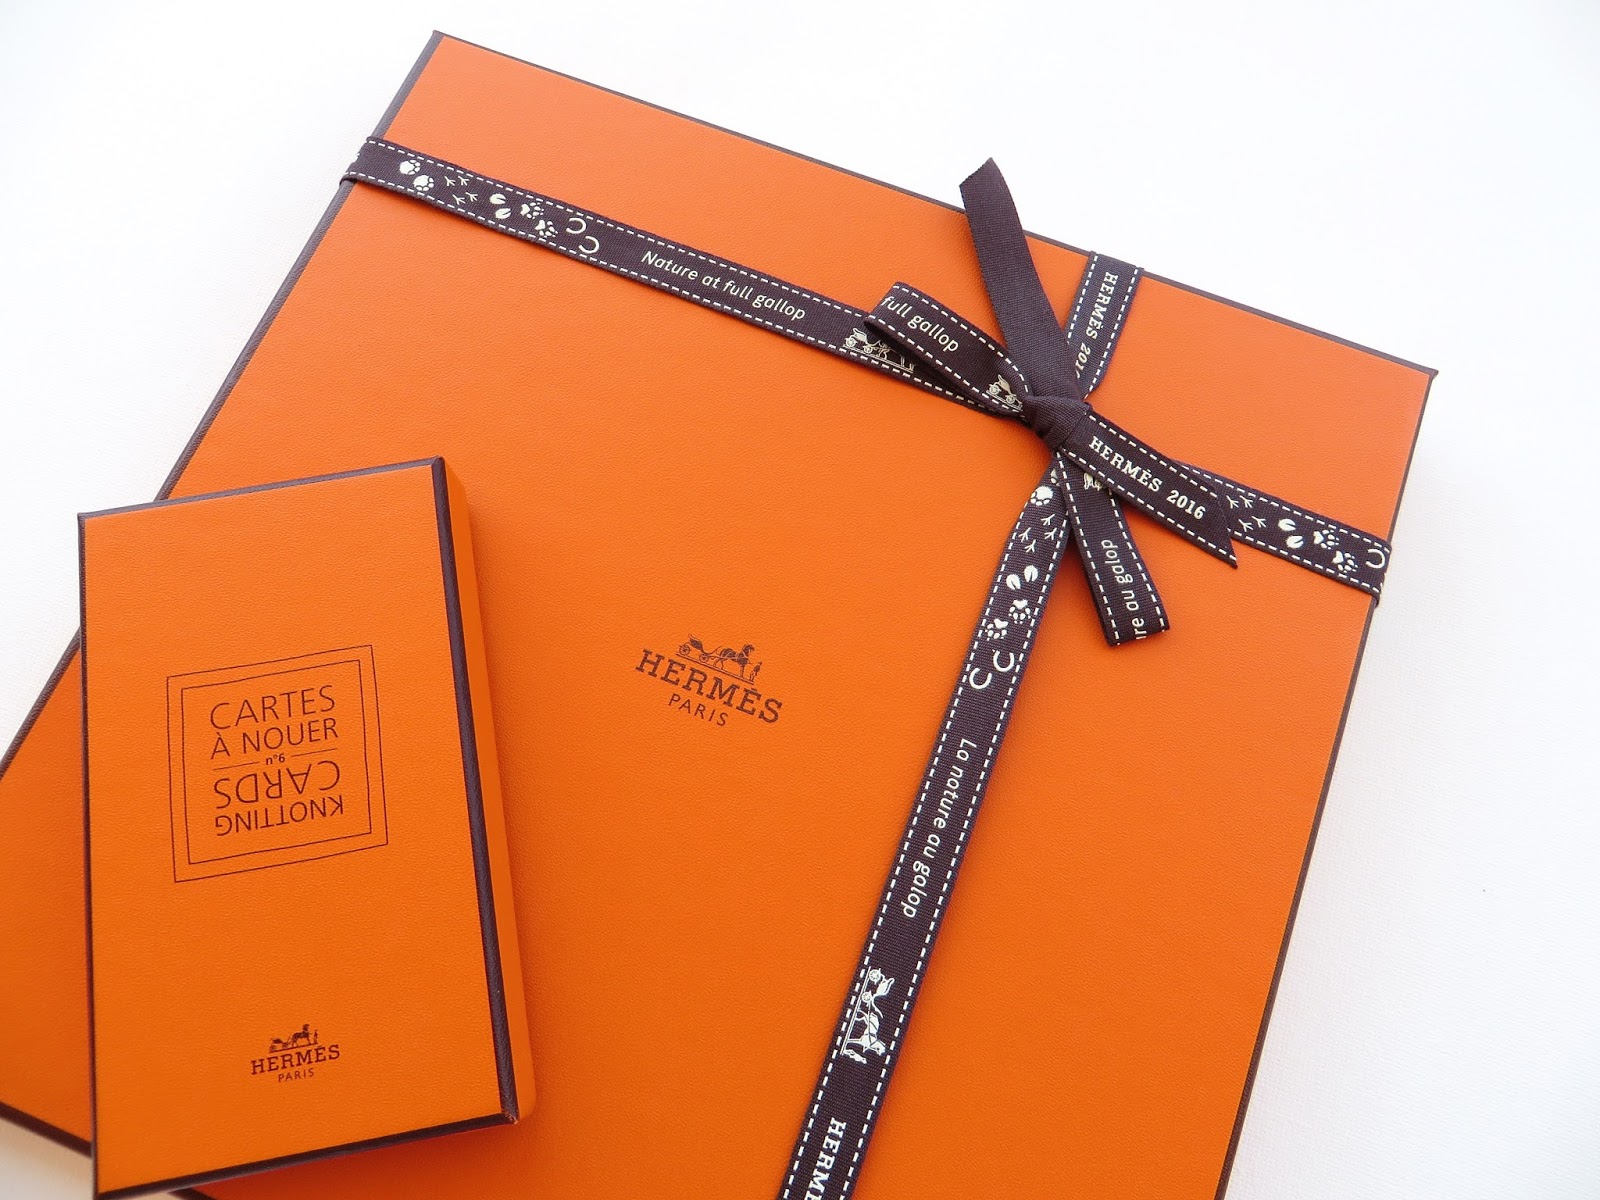 Lãs com Tons: Hermès - "Os melhores presentes vêm numa caixa cor de